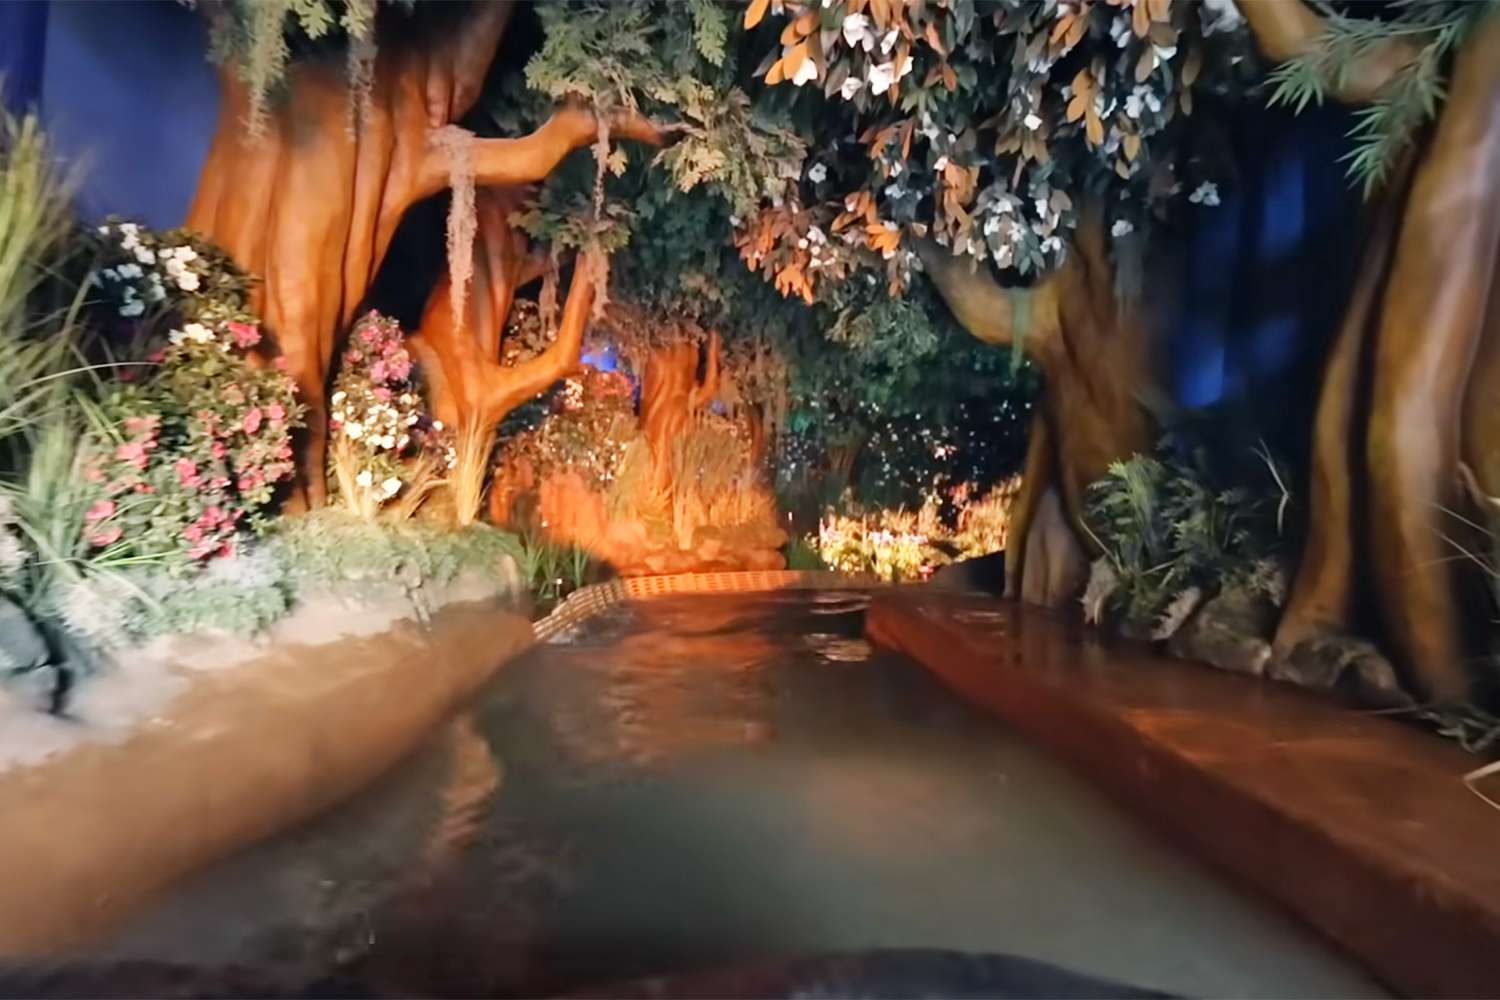 Tiana's Bayou Adventure ride at Disney